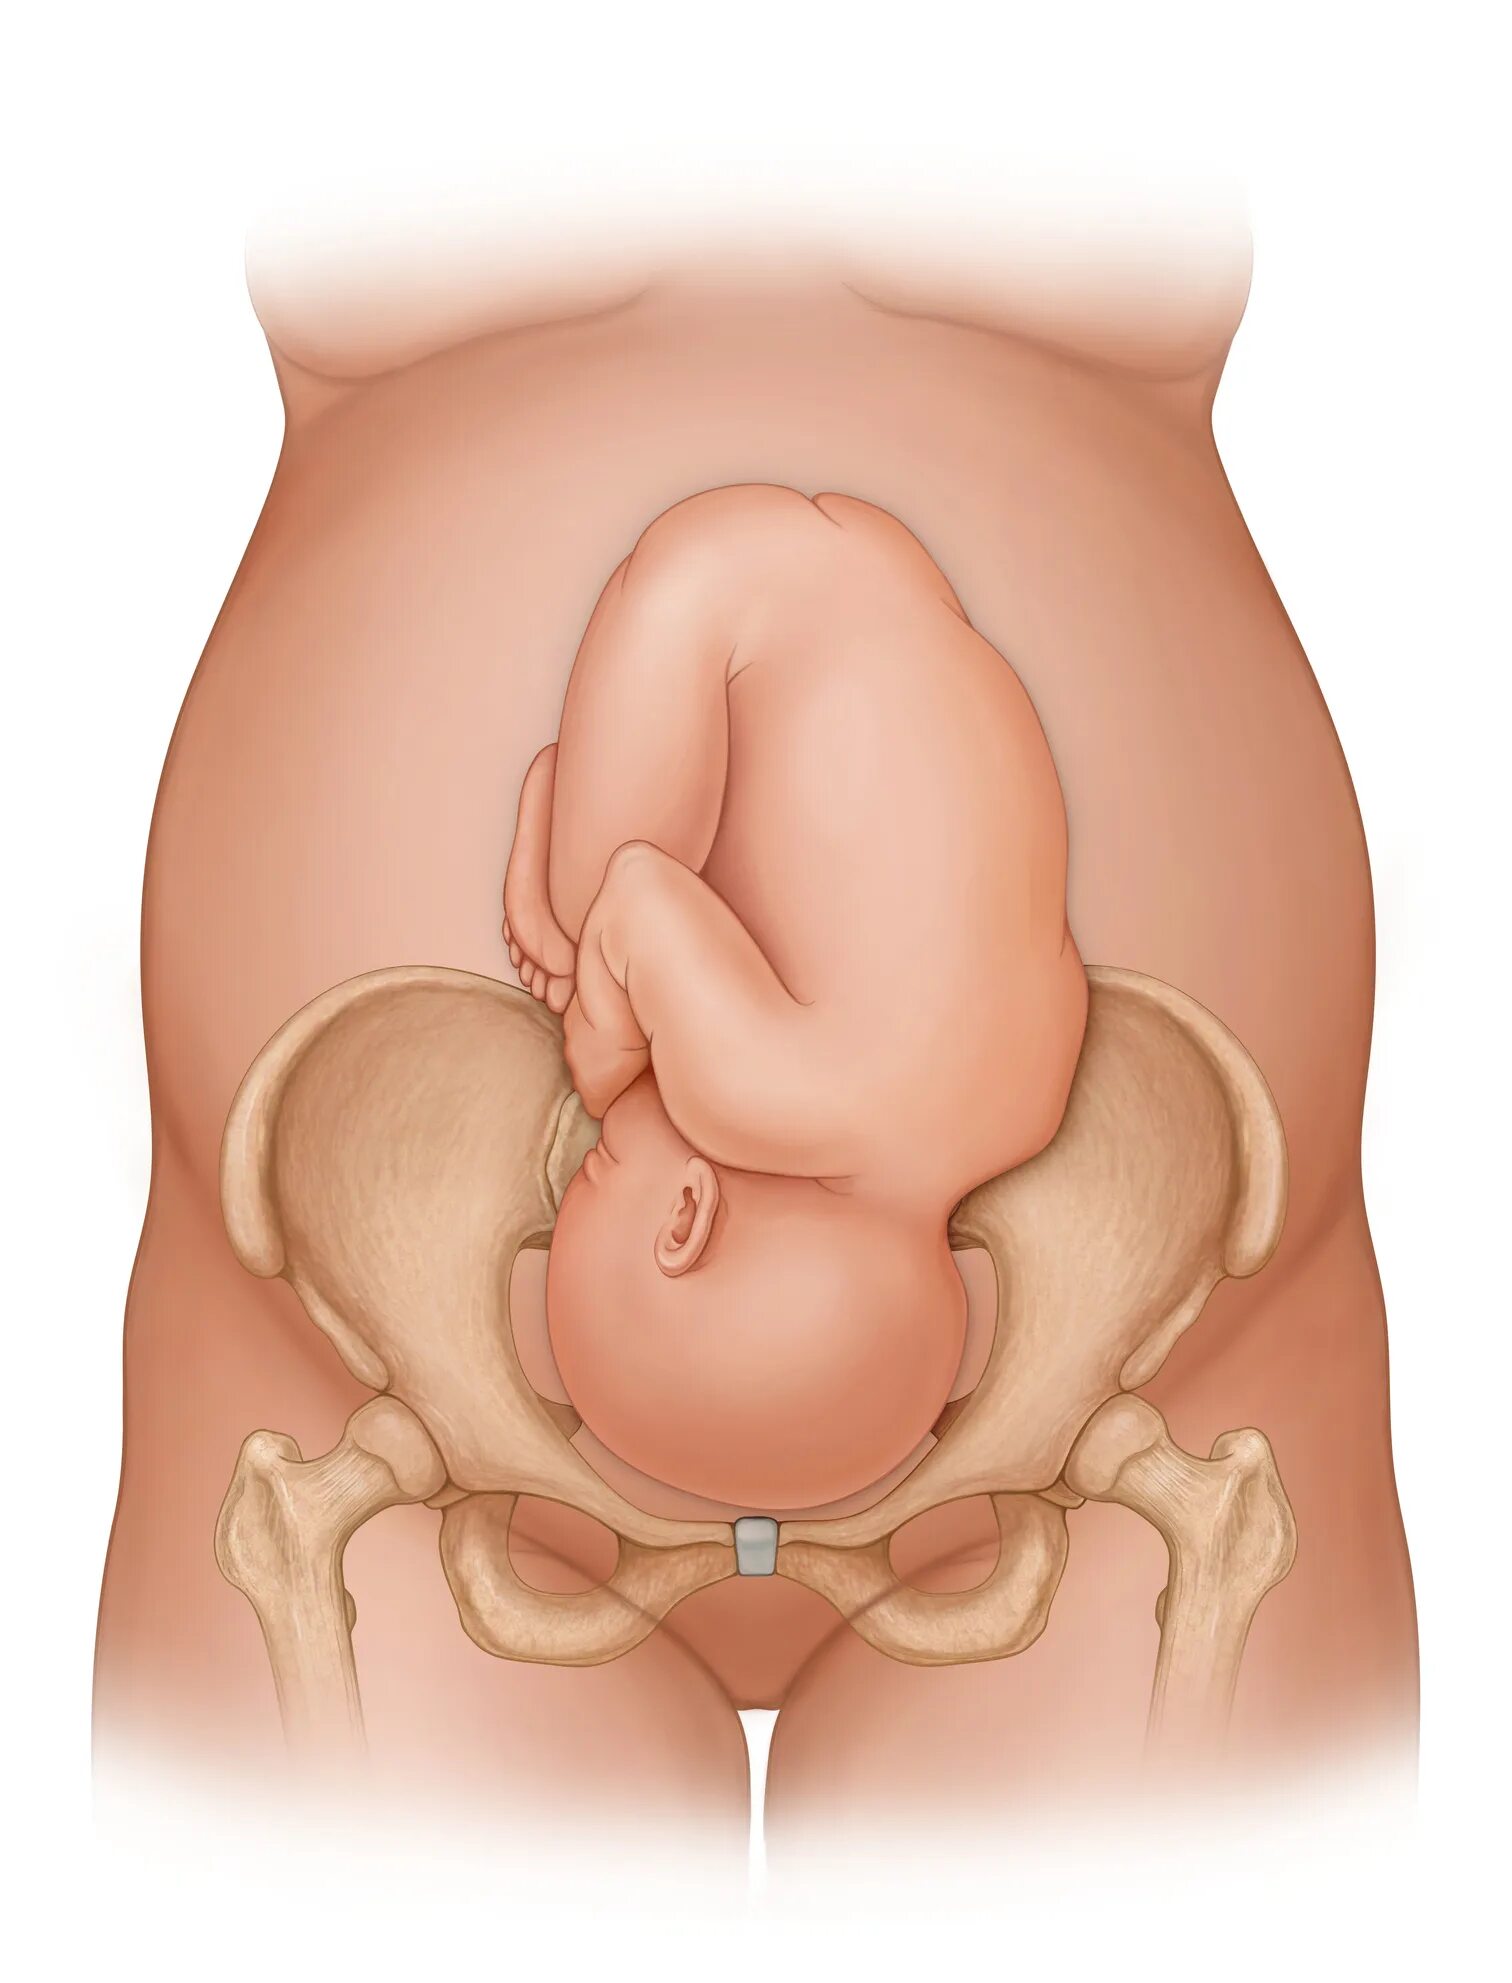 33 недели беременности сильно. Лобковые кости при беременности. Расширение таза при родах. Расширение таза при беременности. Тазовые кости при родах.